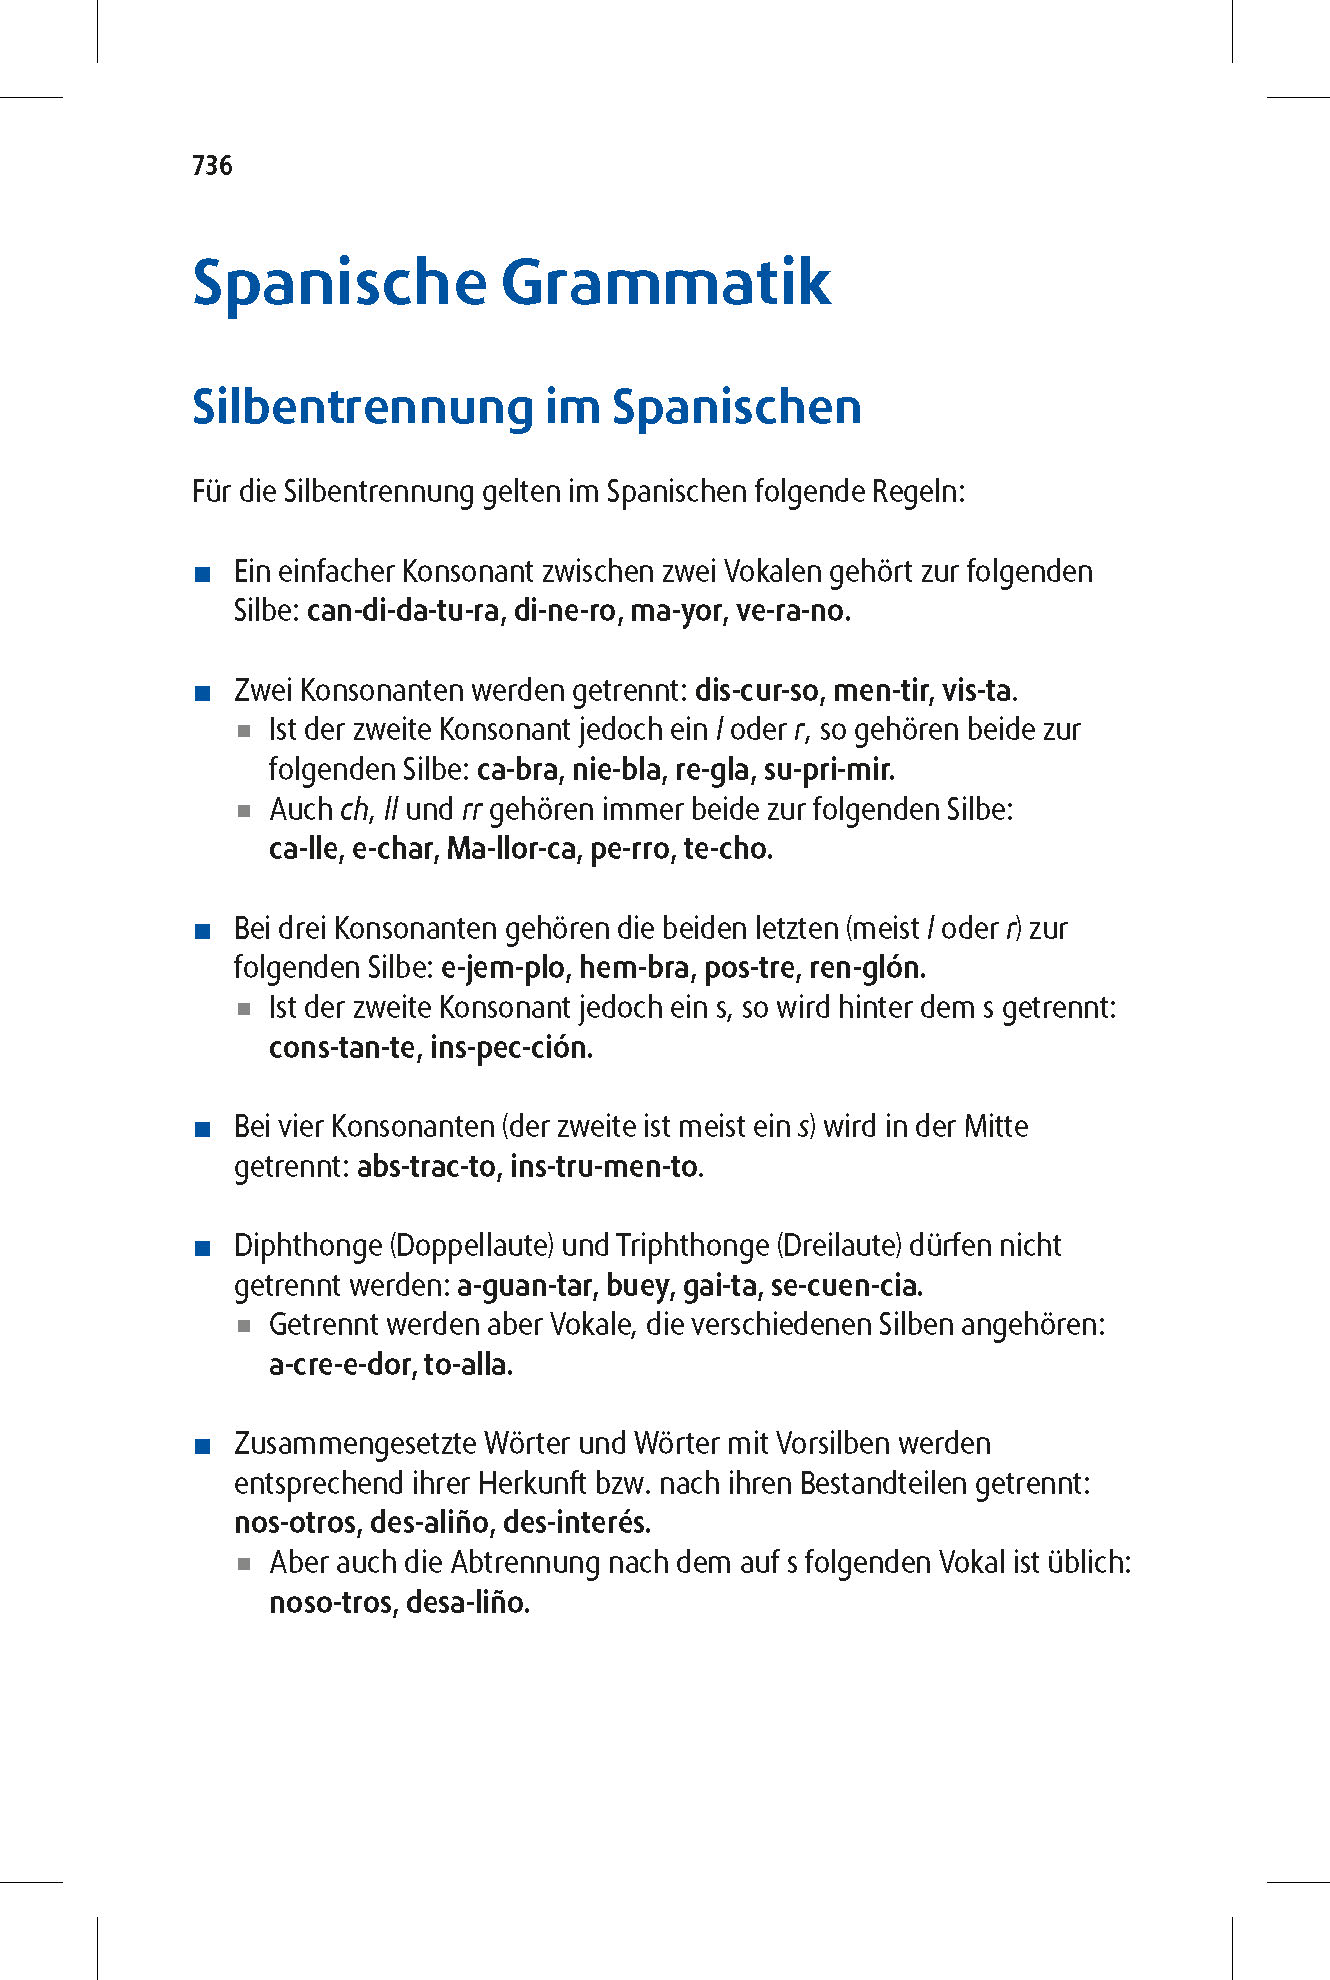 Langenscheidt Praktisches Wörterbuch Spanisch